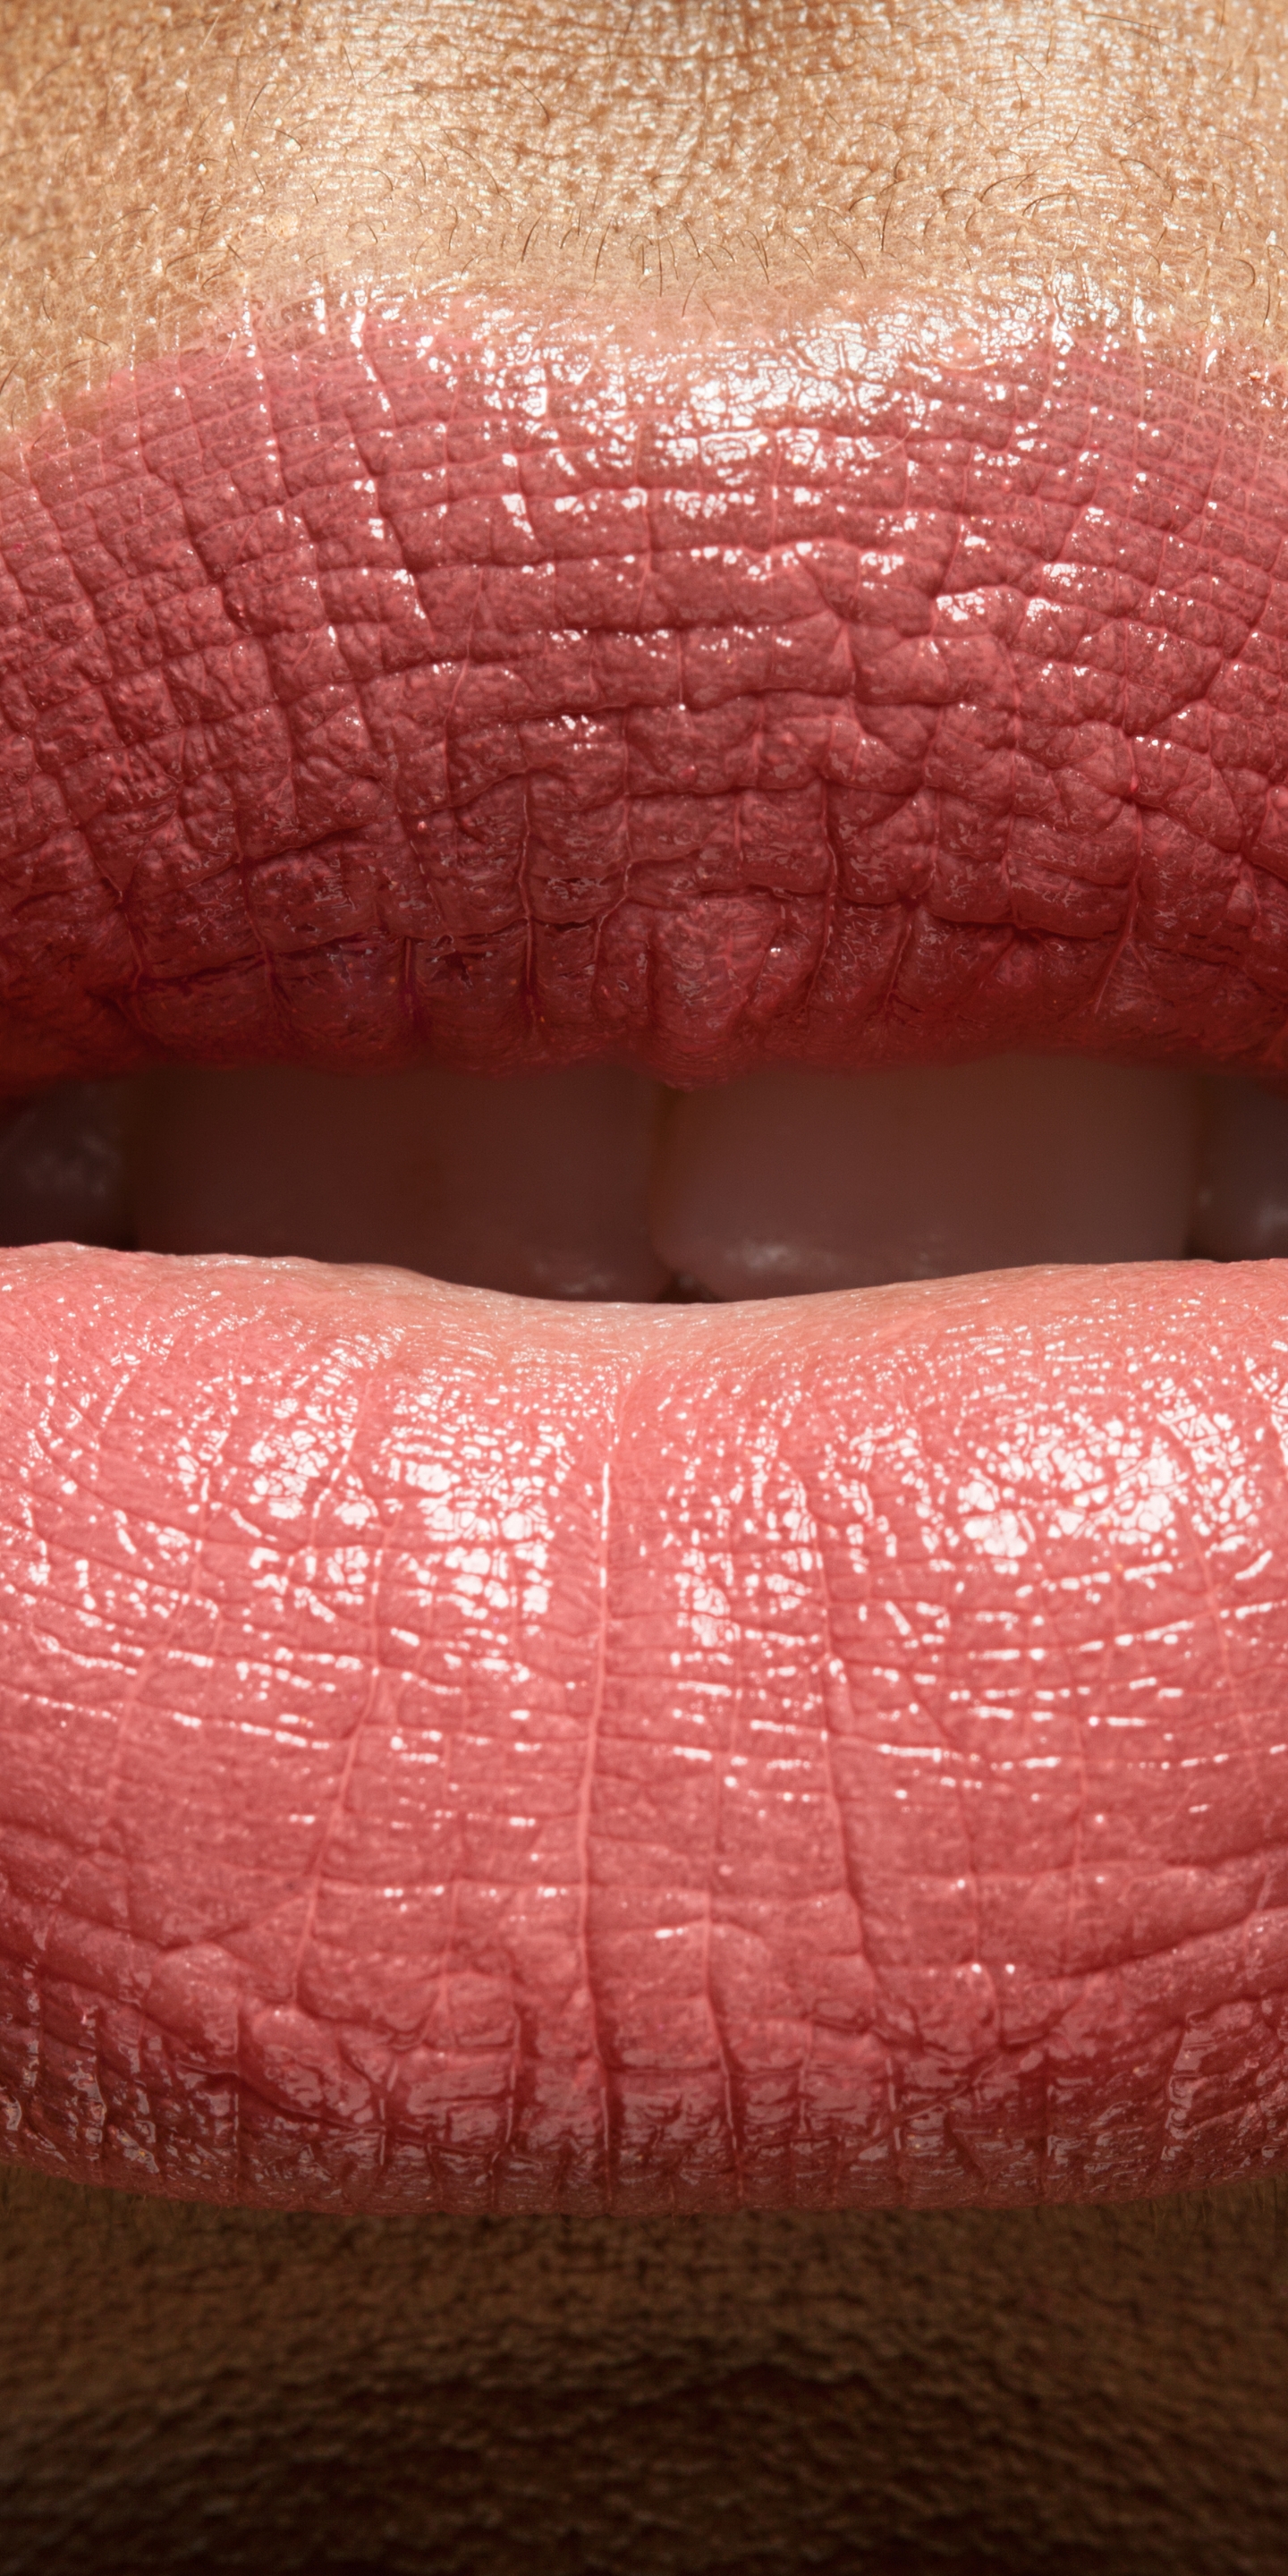 Image: Lips, mouth, lipstick, close-up